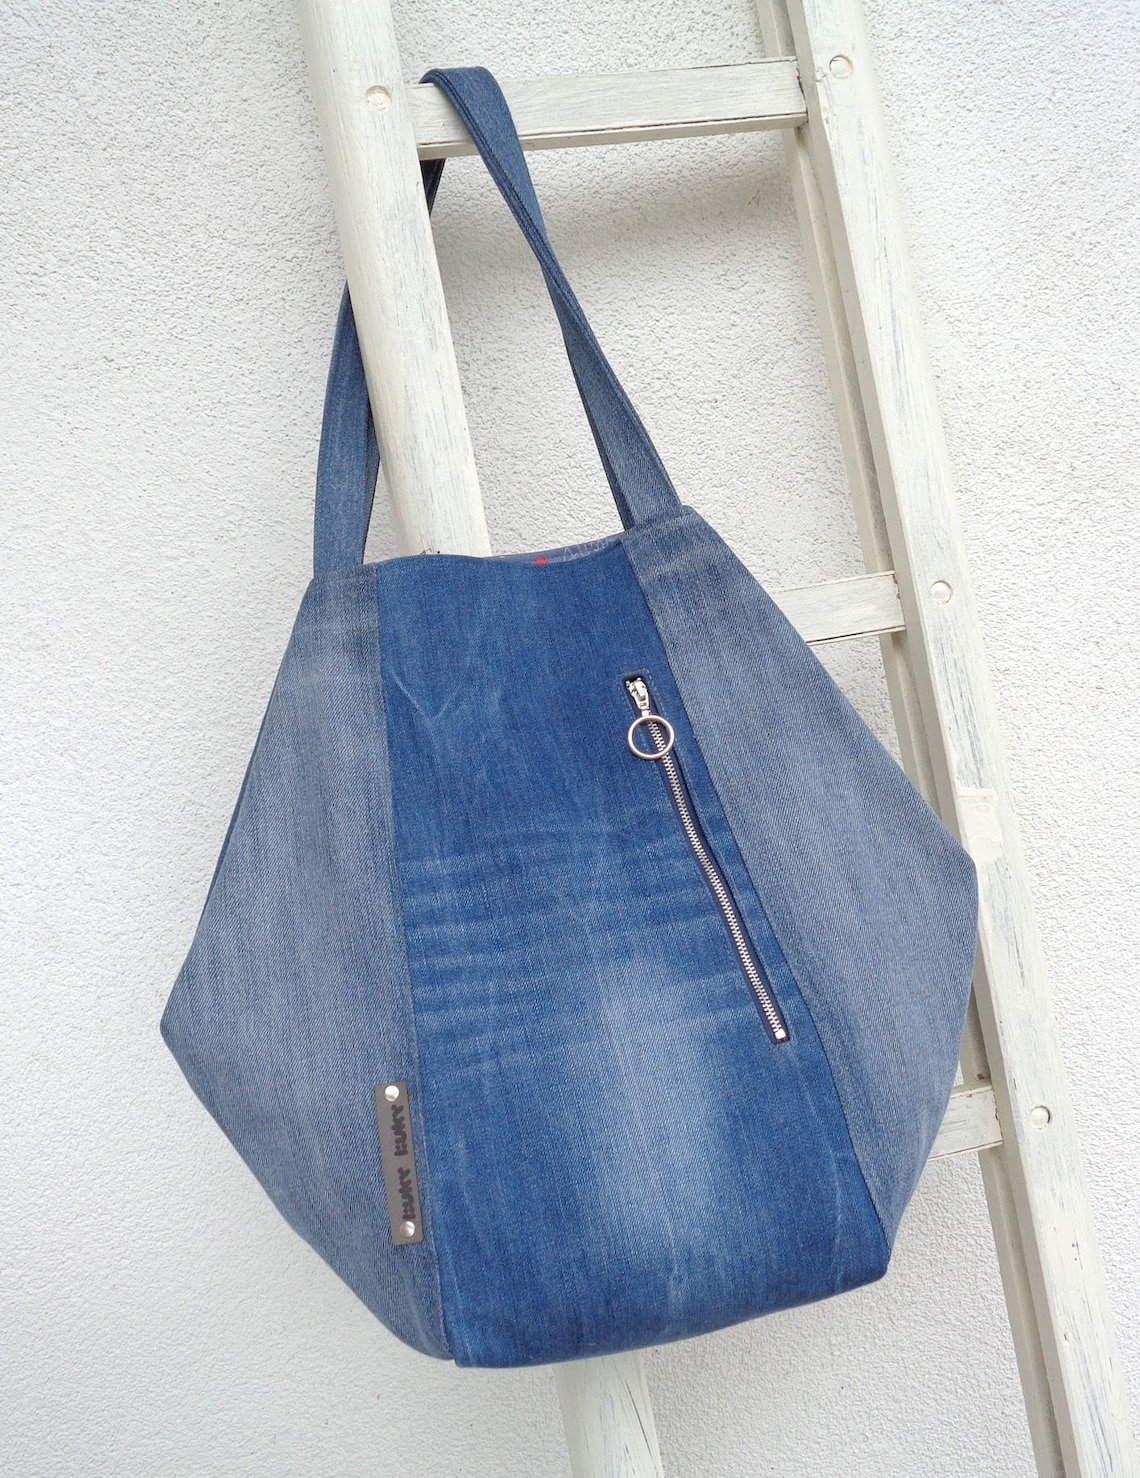 Plain Jeans Tote Bag Denim Handbag Shoulder Bag Blue Denim - Etsy Israel